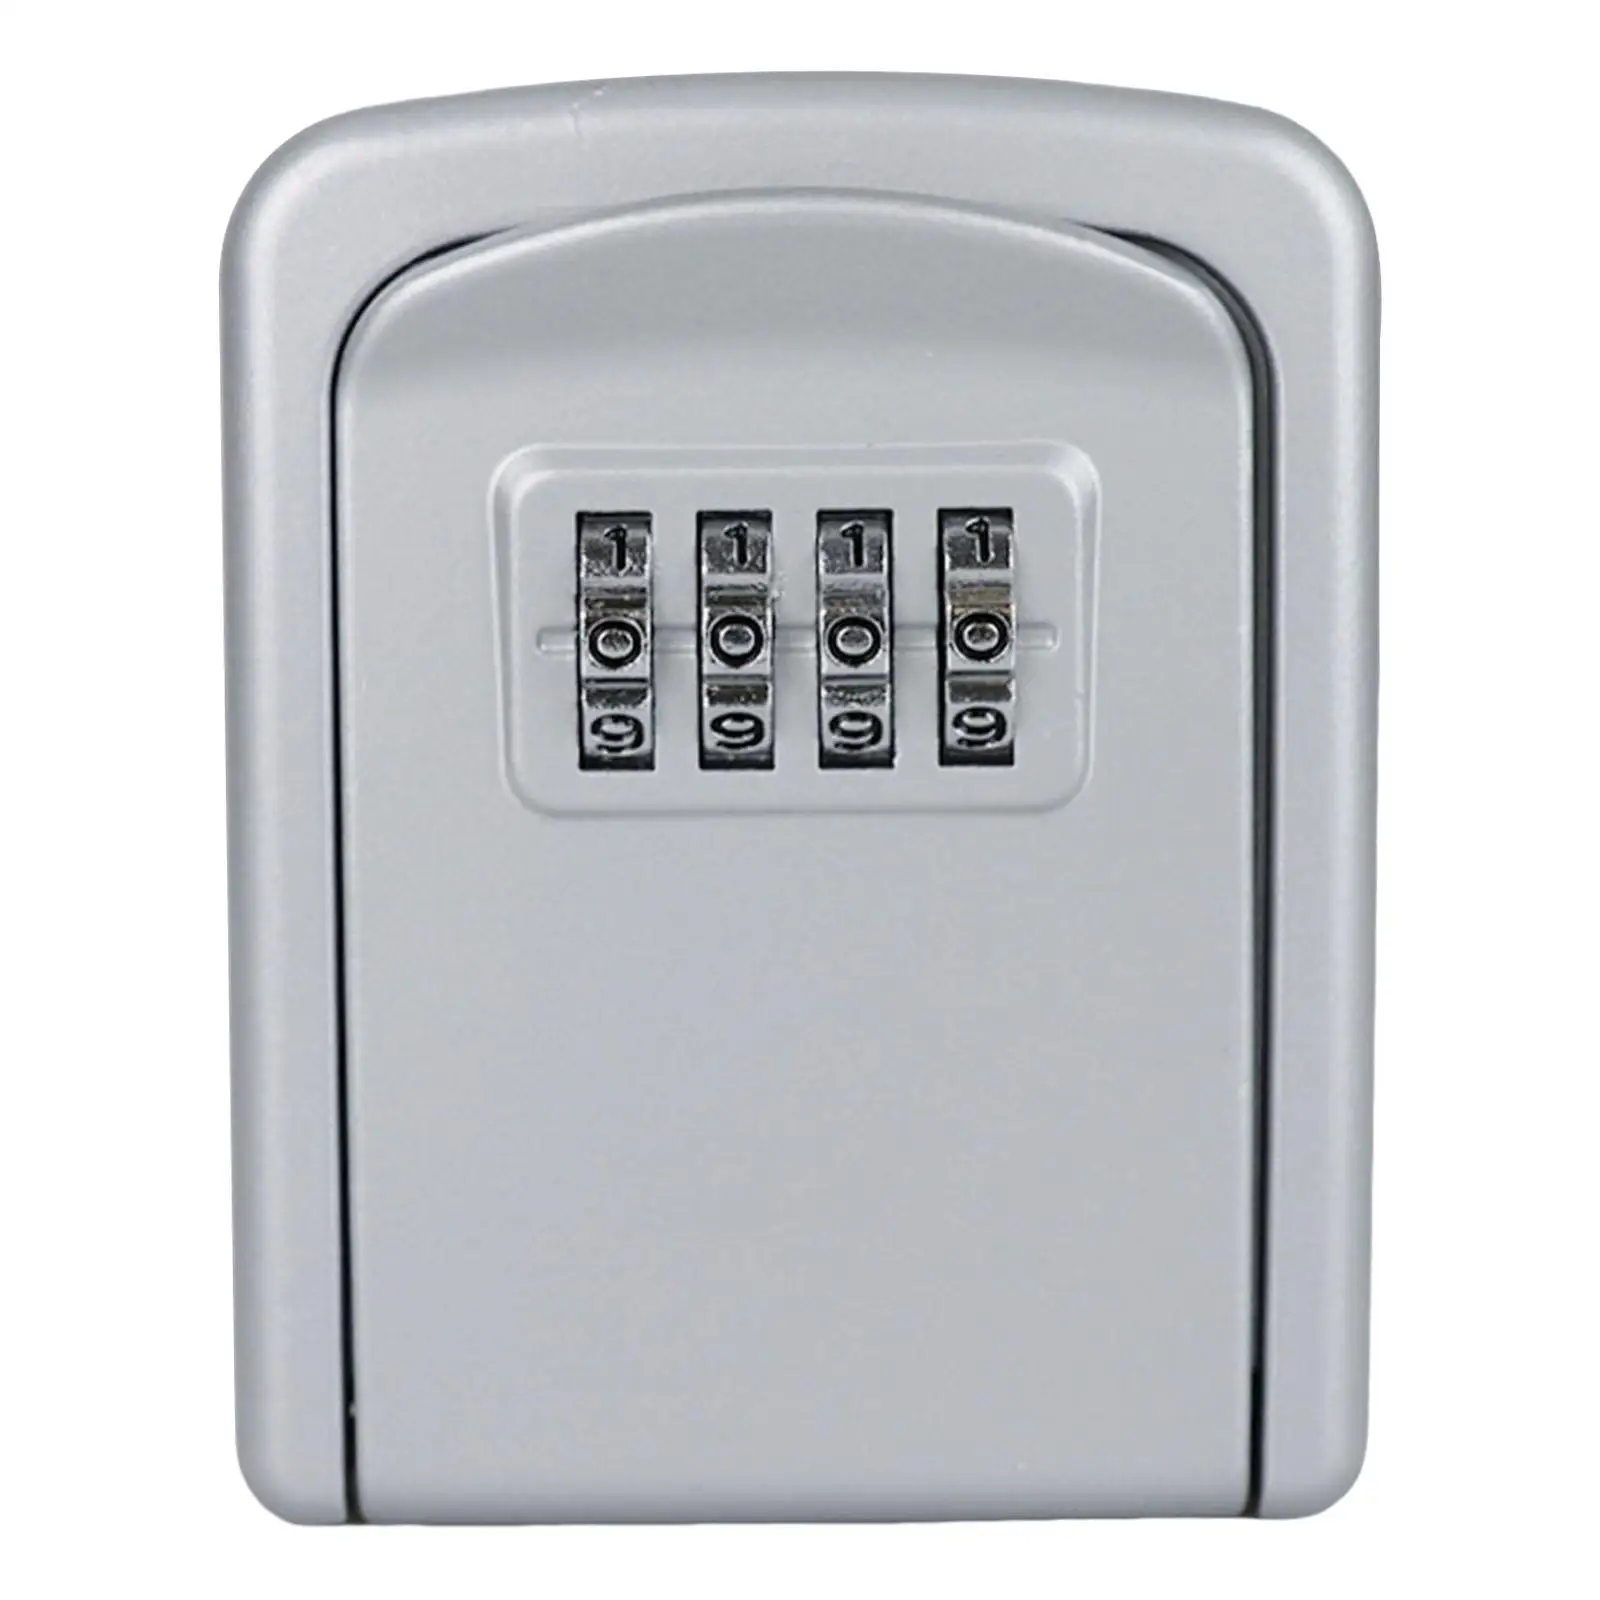 Outdoor Key Storage Lock Box 4 Digit Password Key Storage Case for Home Garage Indoor